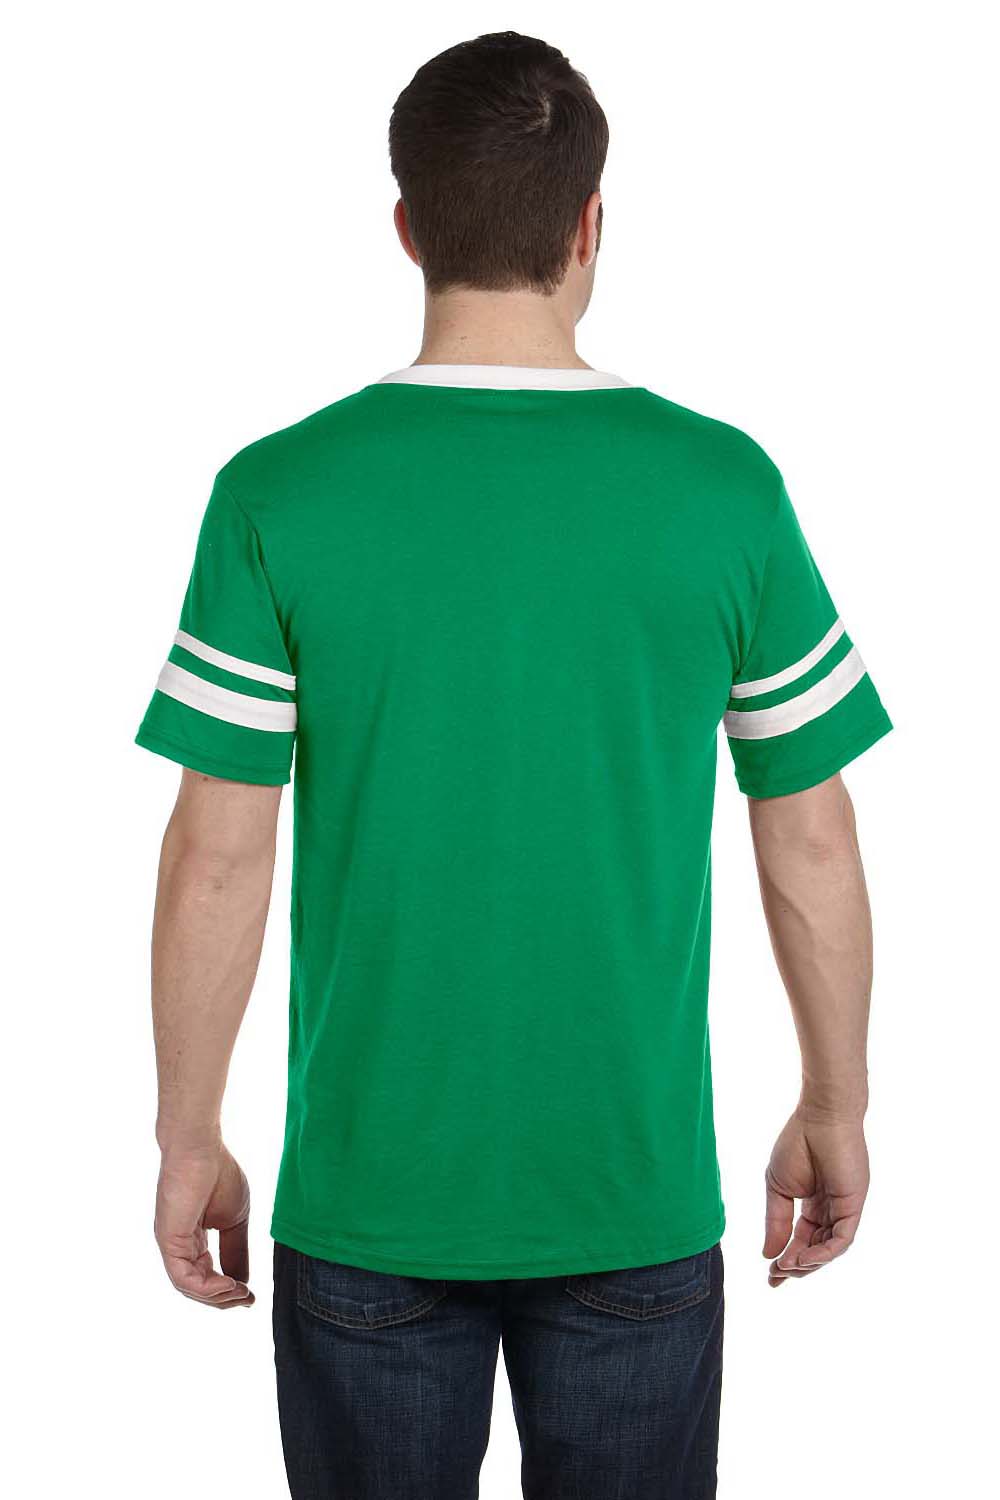 Augusta Sportswear 360 Mens Short Sleeve V-Neck T-Shirt Kelly Green/White Model Back